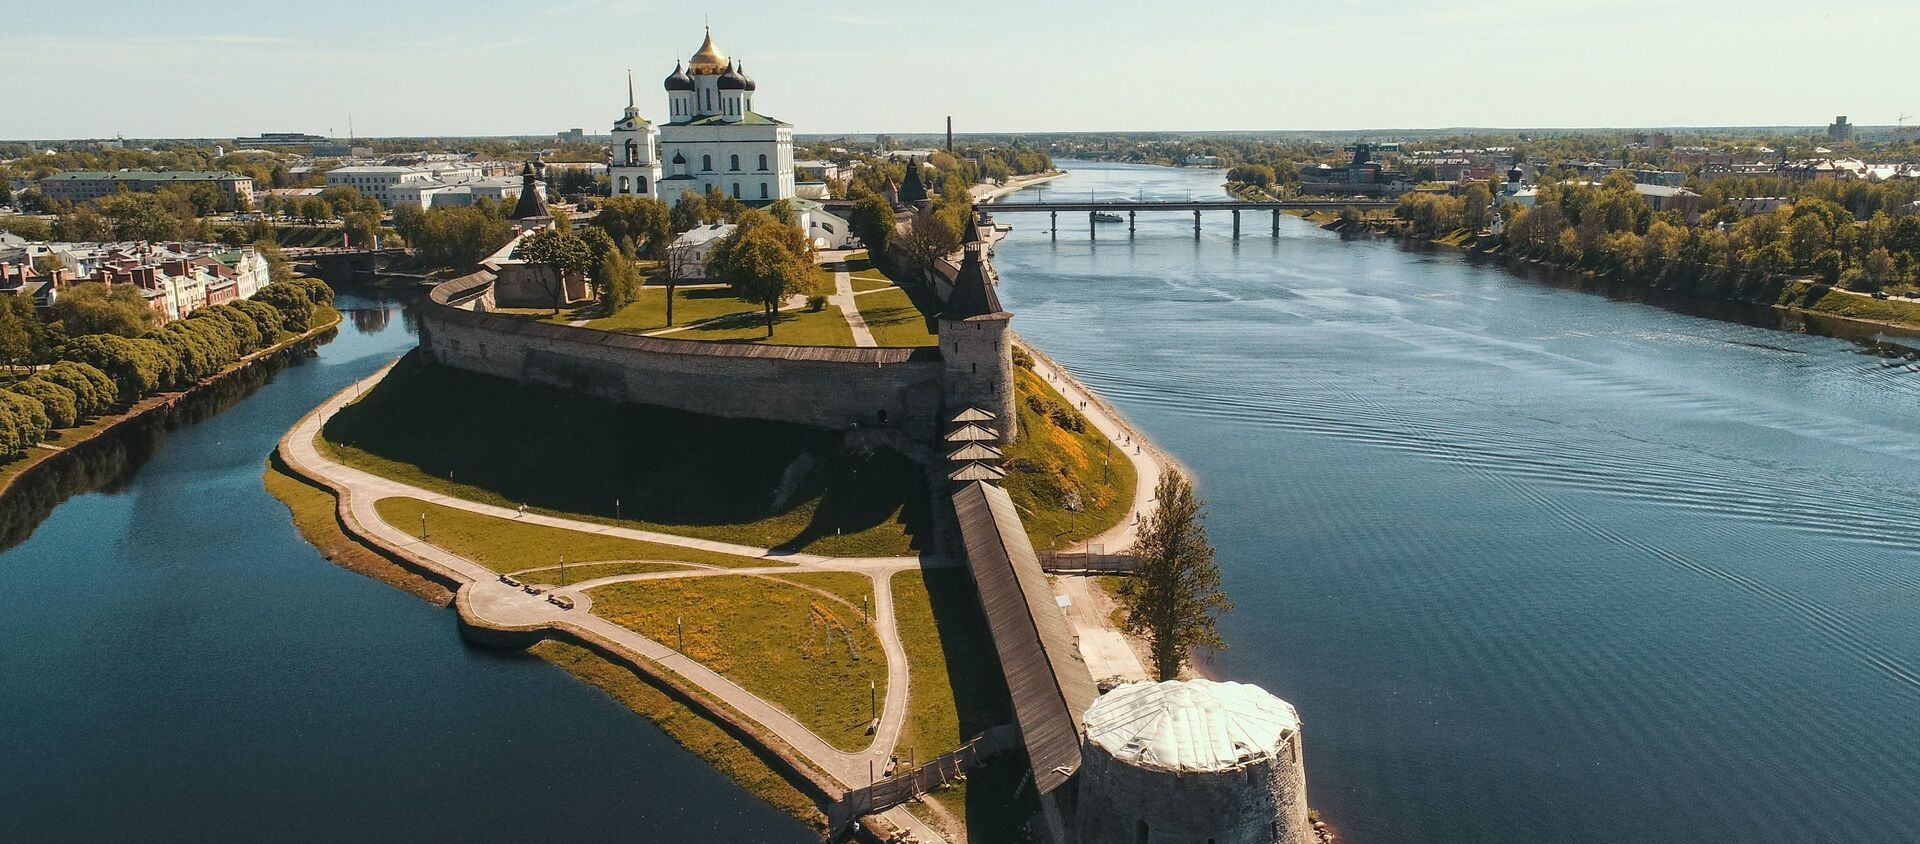 El Kremlin de Pskov, Rusia - Sputnik Mundo, 1920, 07.07.2019